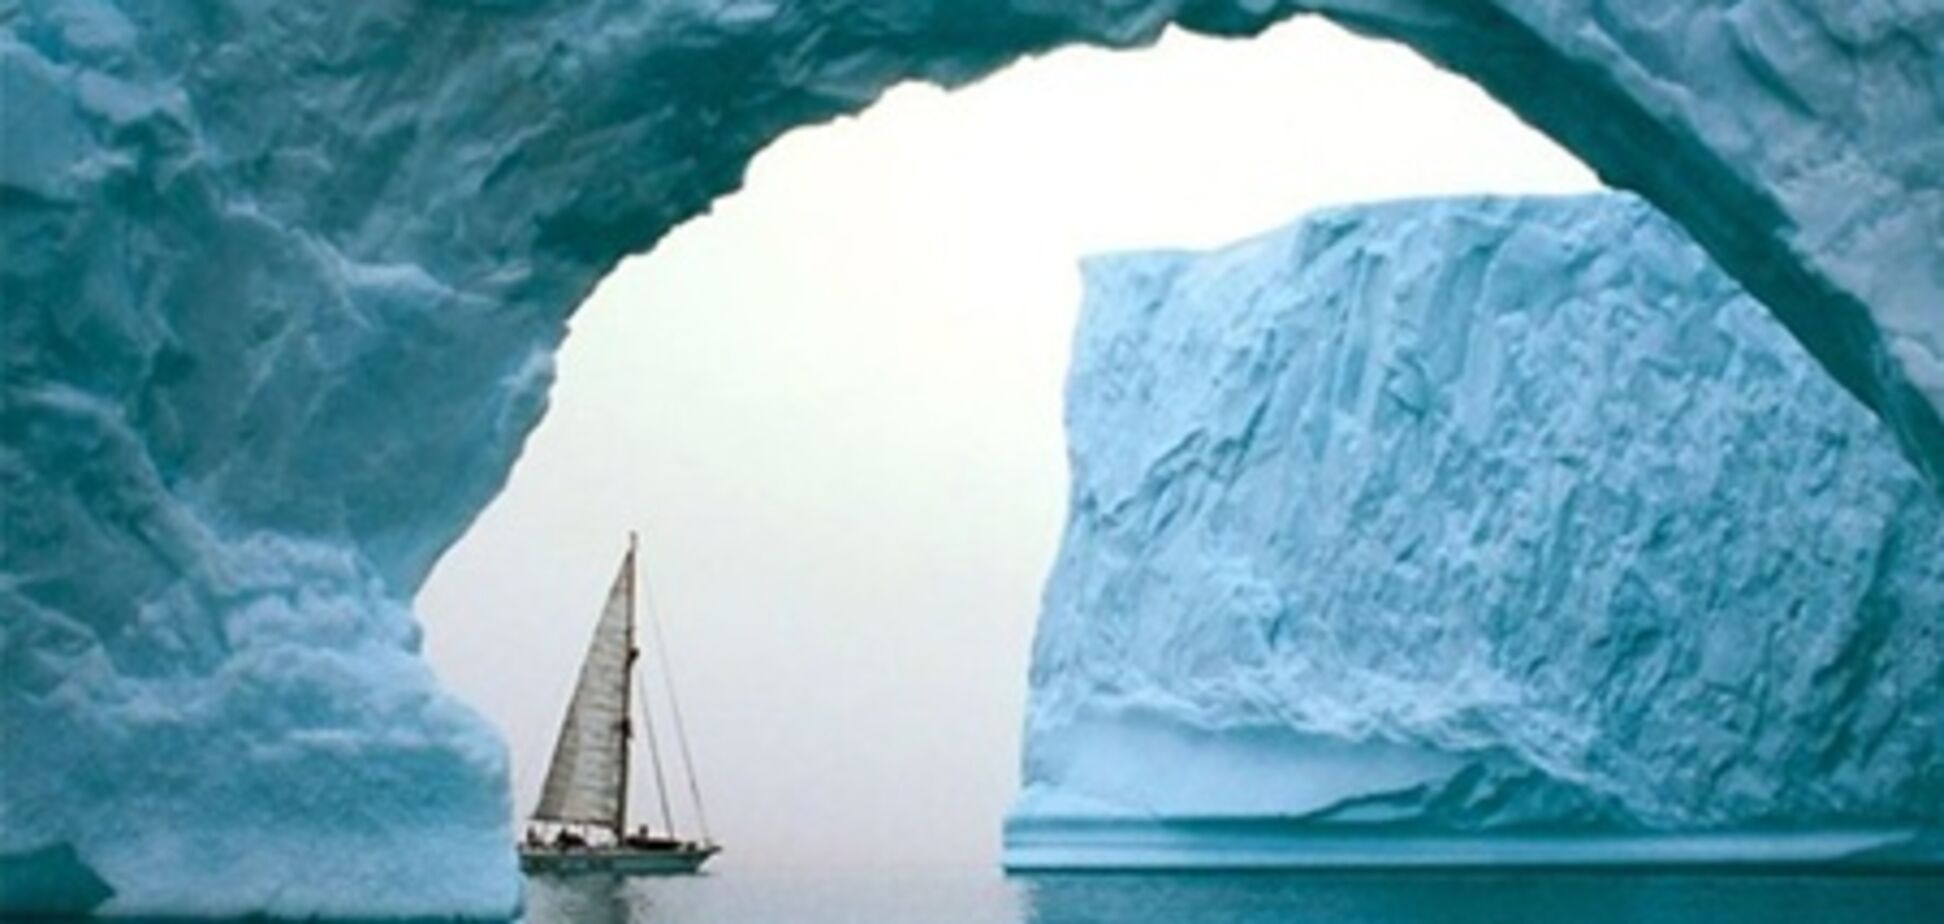 Над Арктикой зафиксировано рекордное уменьшение озонового слоя